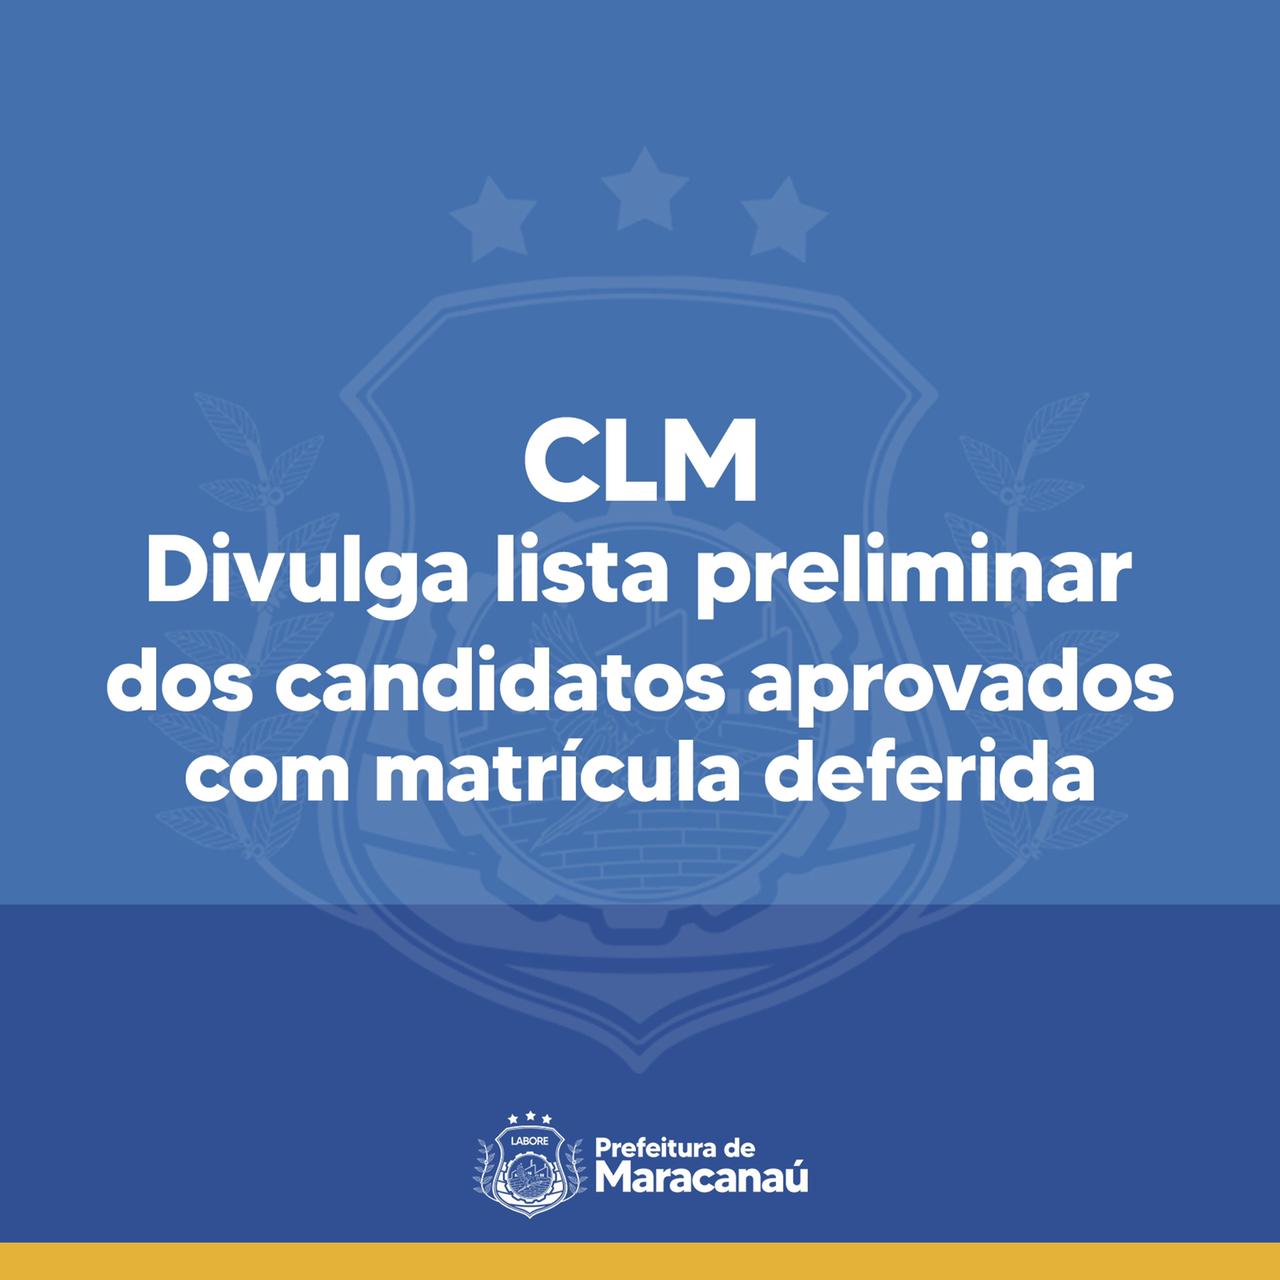 Você está visualizando atualmente CLM divulga lista preliminar dos candidatos aprovados com matrícula deferida